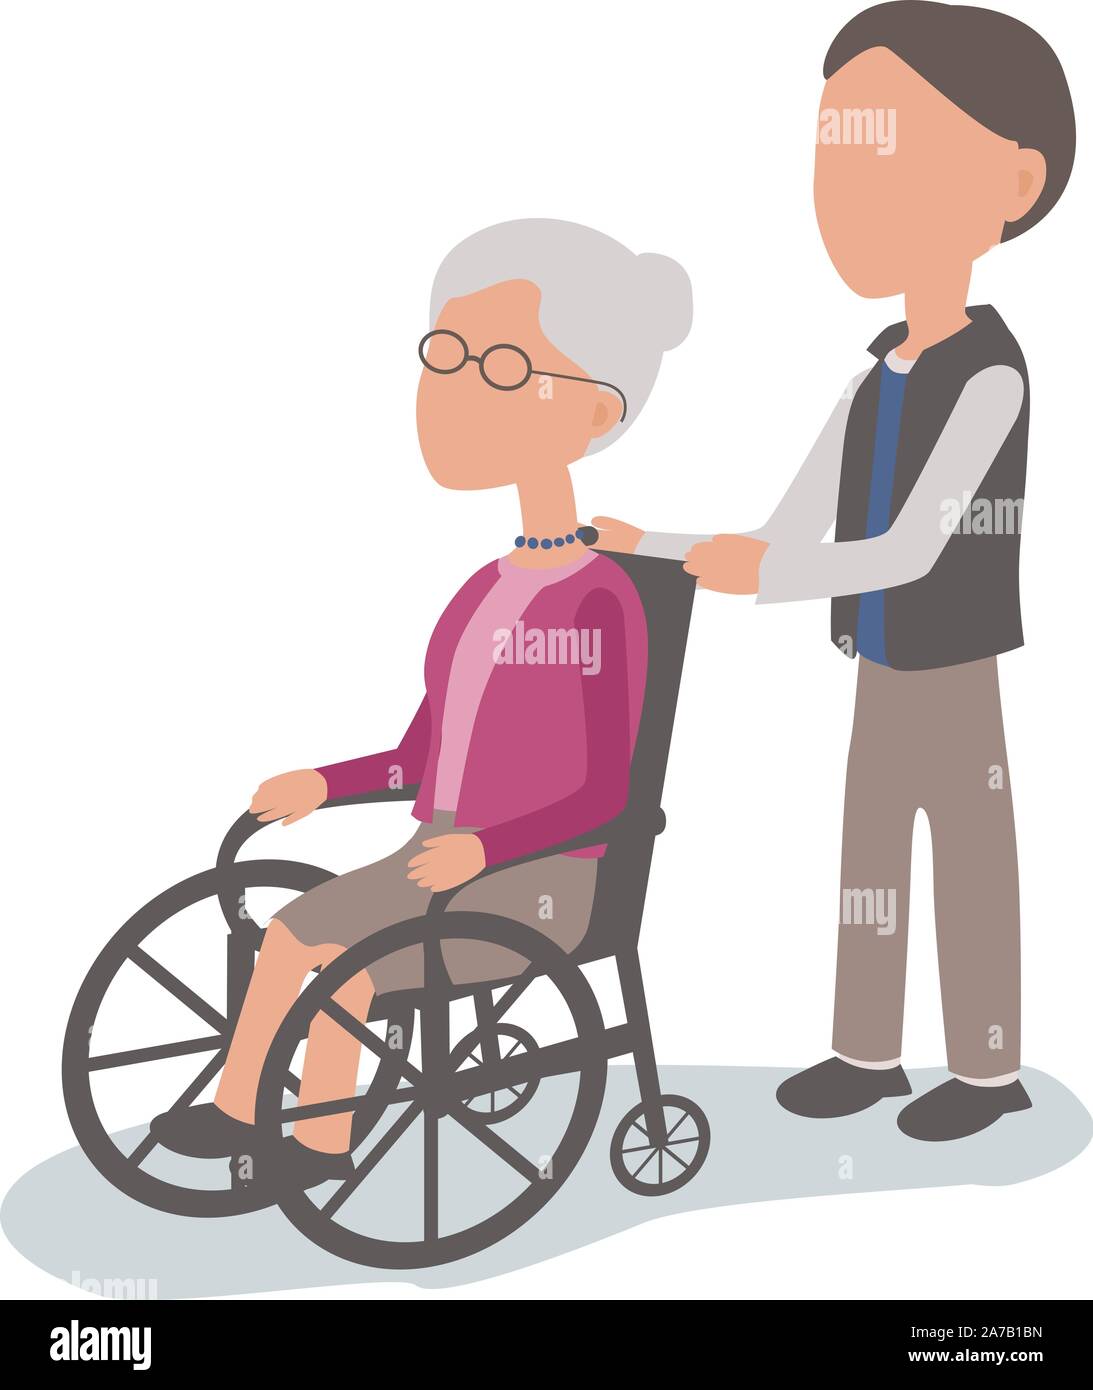 Son helping woman in wheelchair - vecteur de parties du corps des caractères regroupés et facile à éditer - palette limitée Illustration de Vecteur